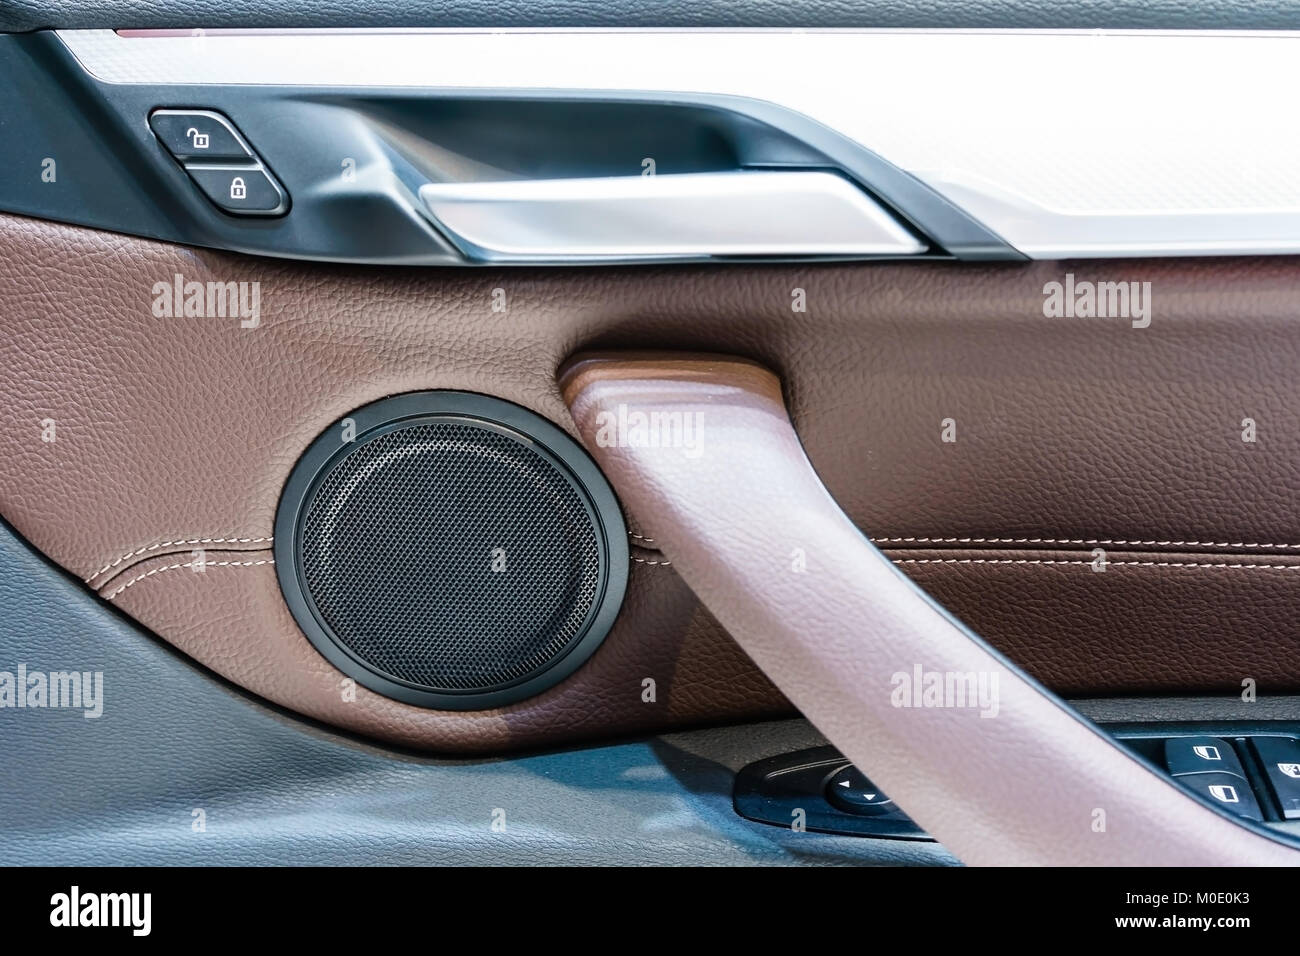 Türgriff innen im Auto, Taste Verriegelung der Türen Stockfotografie - Alamy